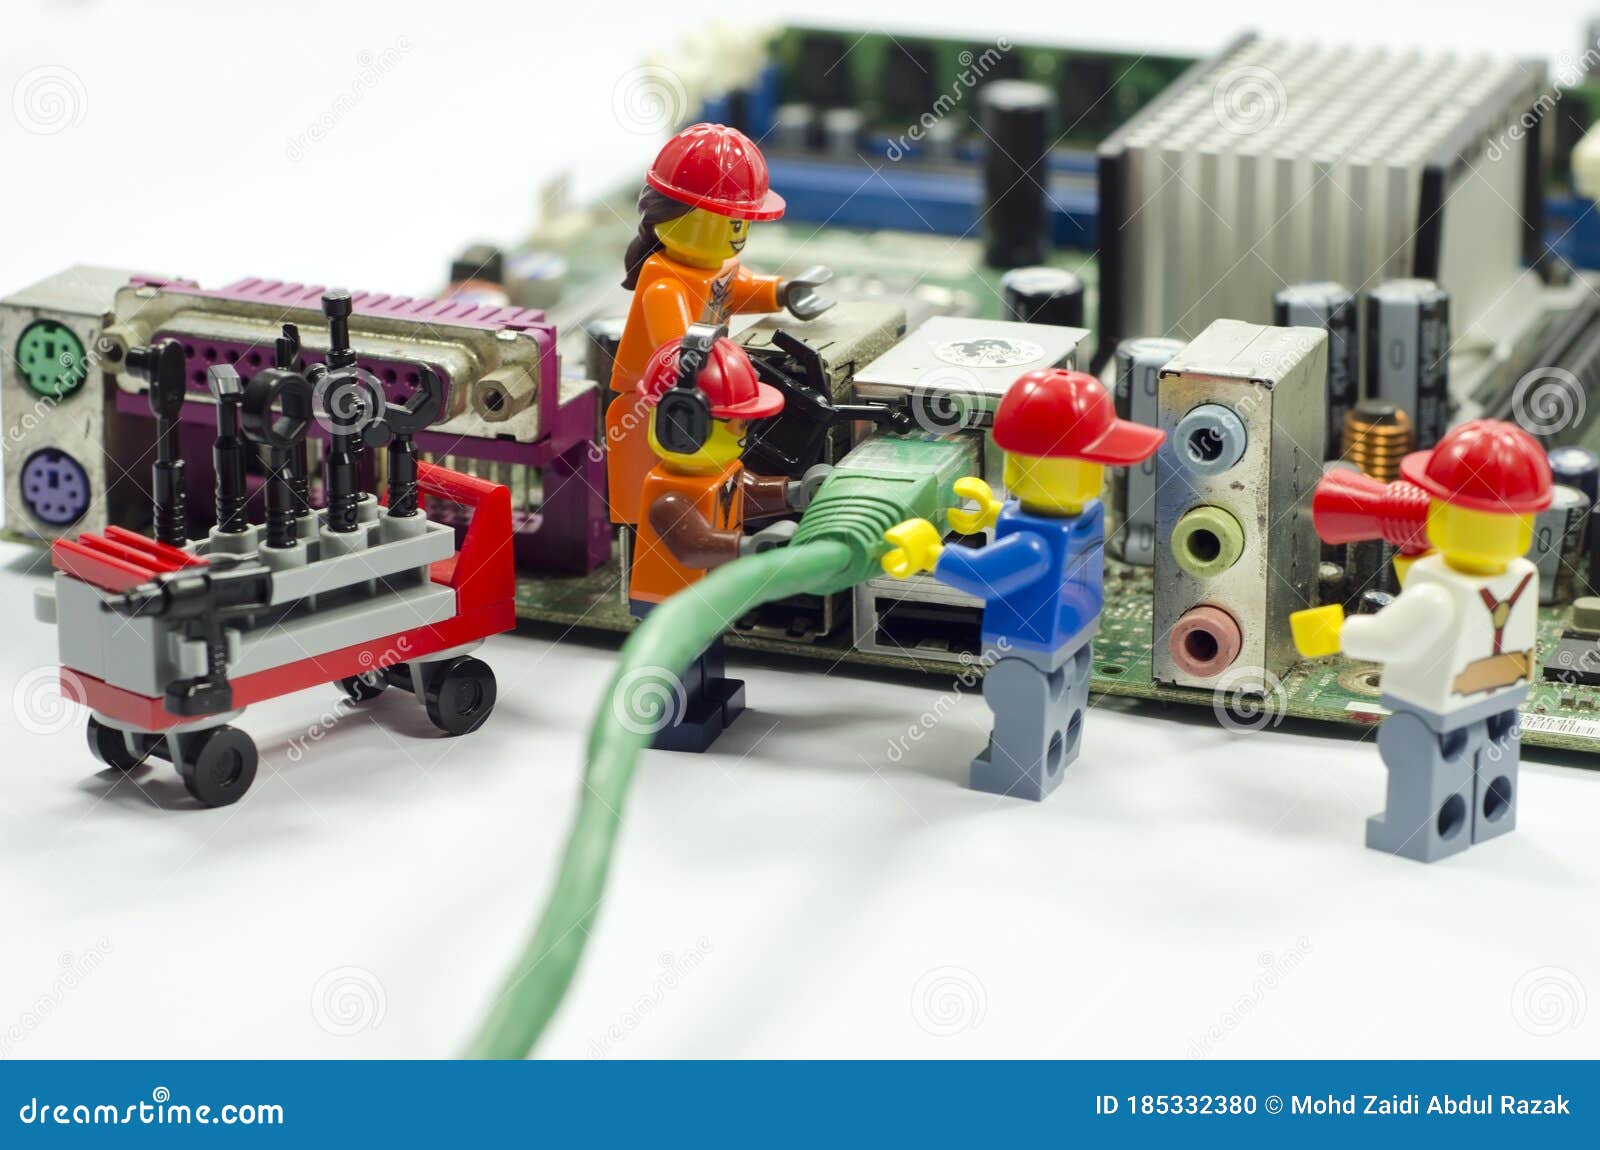 efterfølger Beskrive koloni Teamwork of Lego Worker Plug in Internet Cable on Internet Port  Motherboard. Editorial Image - Image of data, editorial: 185332380